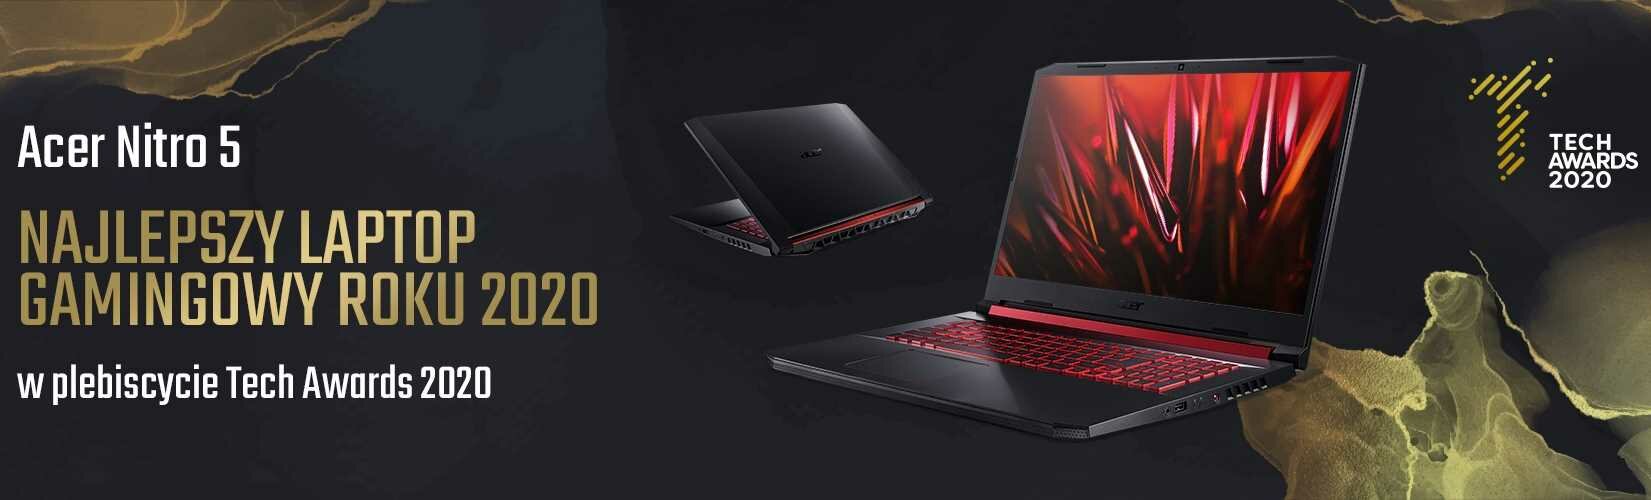 Laptop Acer Nitro 5 Tech Awards 2020 najlepszy laptop gamingowy 2020 roku 